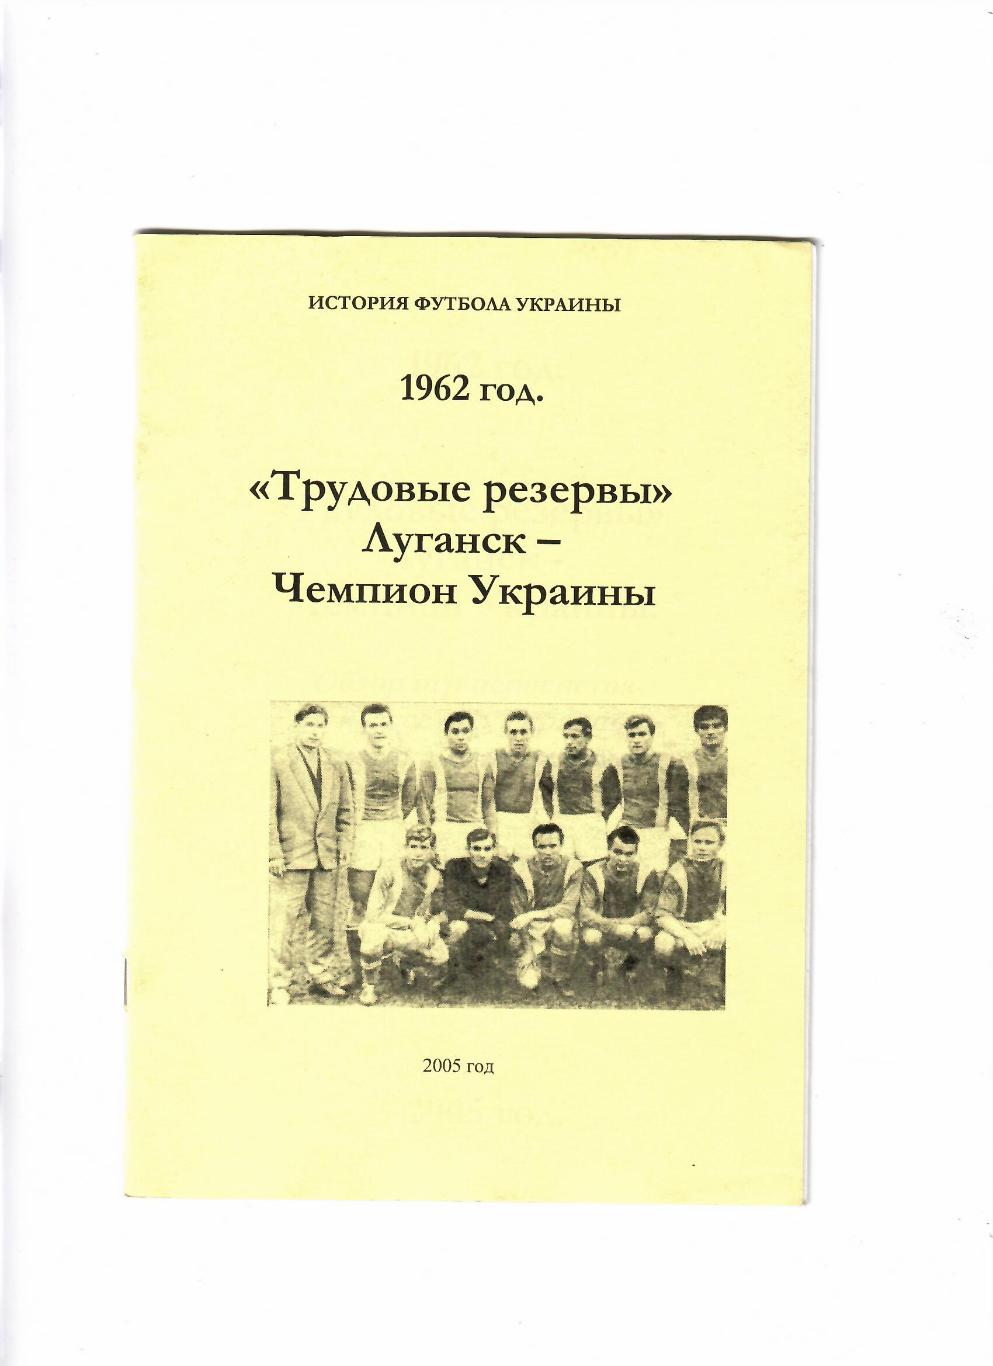 Трудовые резервы Луганск-чемпион Украины 1962